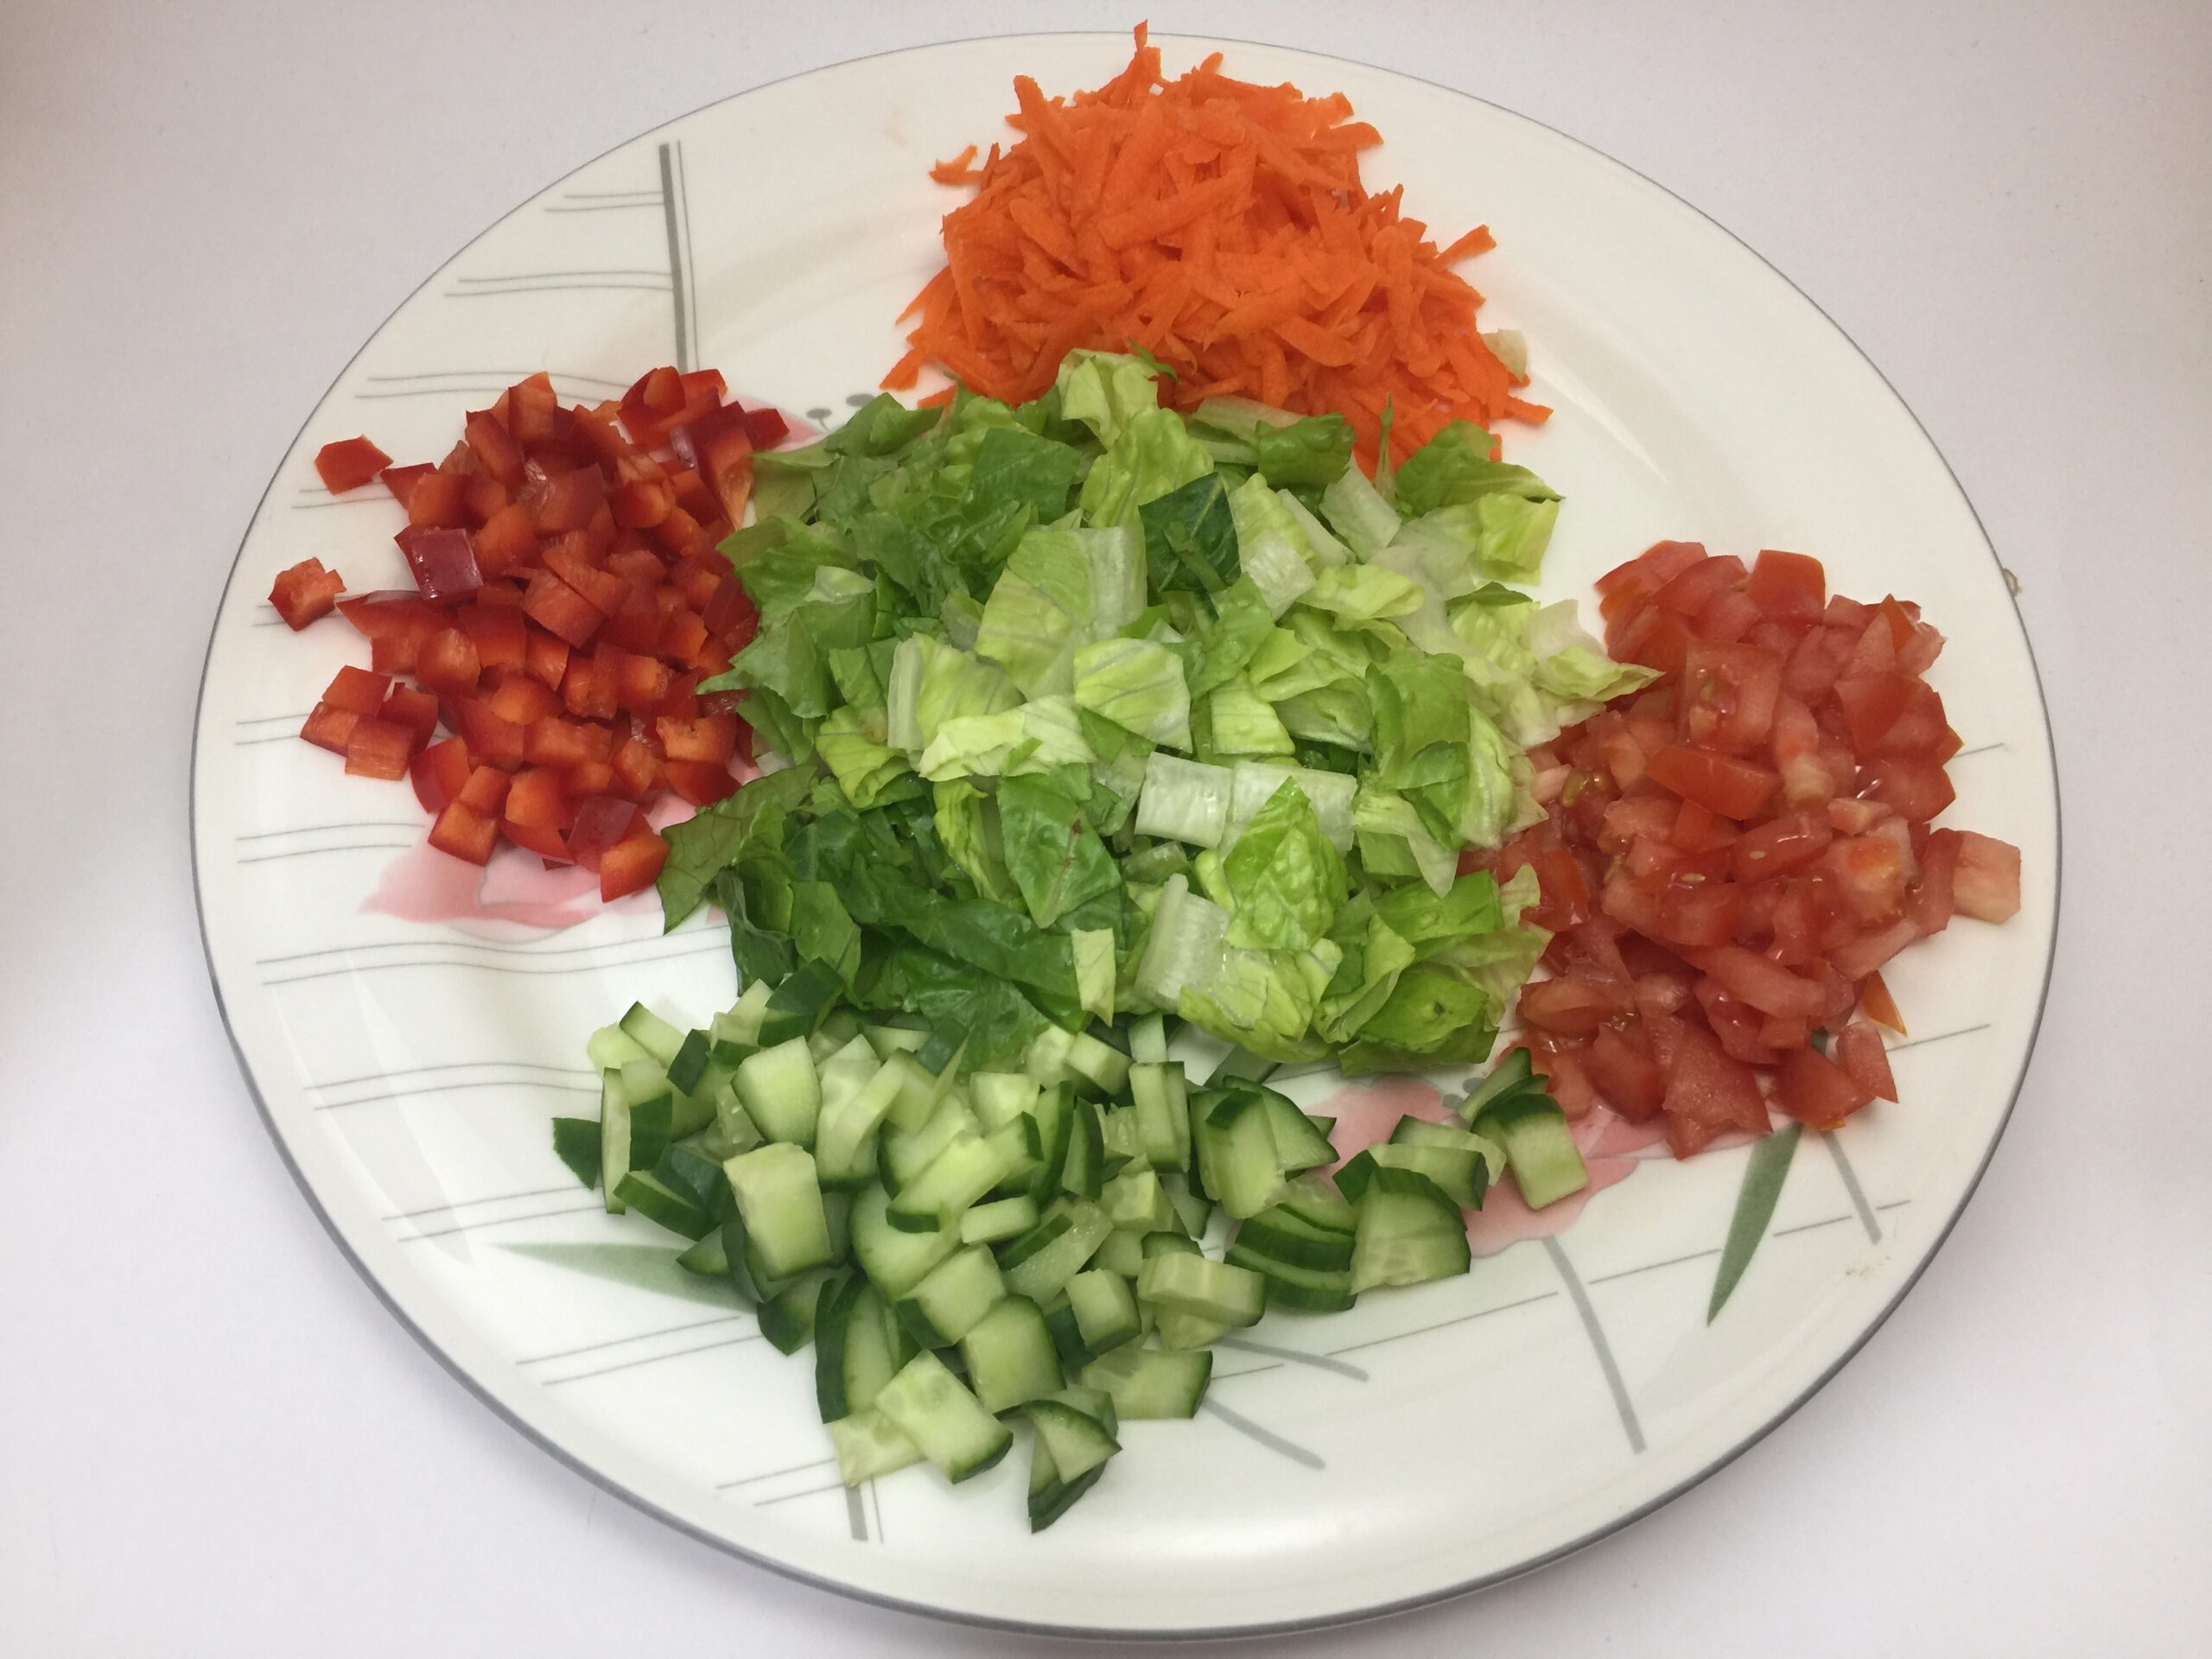 Cut up green salad